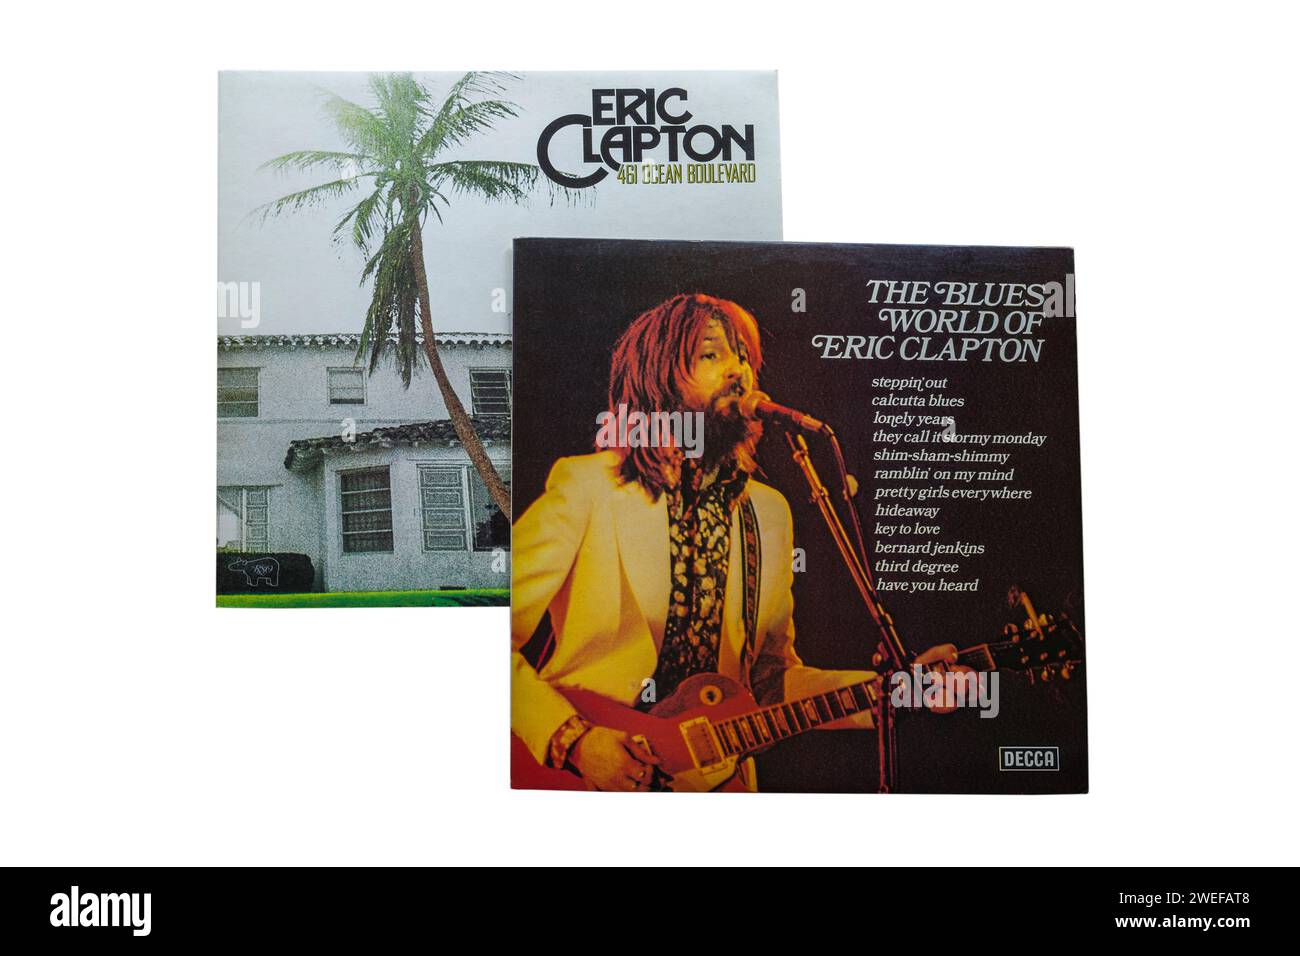 The Blues World of Eric Clapton 1975 & Eric Clapton 461 Ocean Boulevard1974 Vinyl-Album-Cover isoliert auf weißem Hintergrund Stockfoto